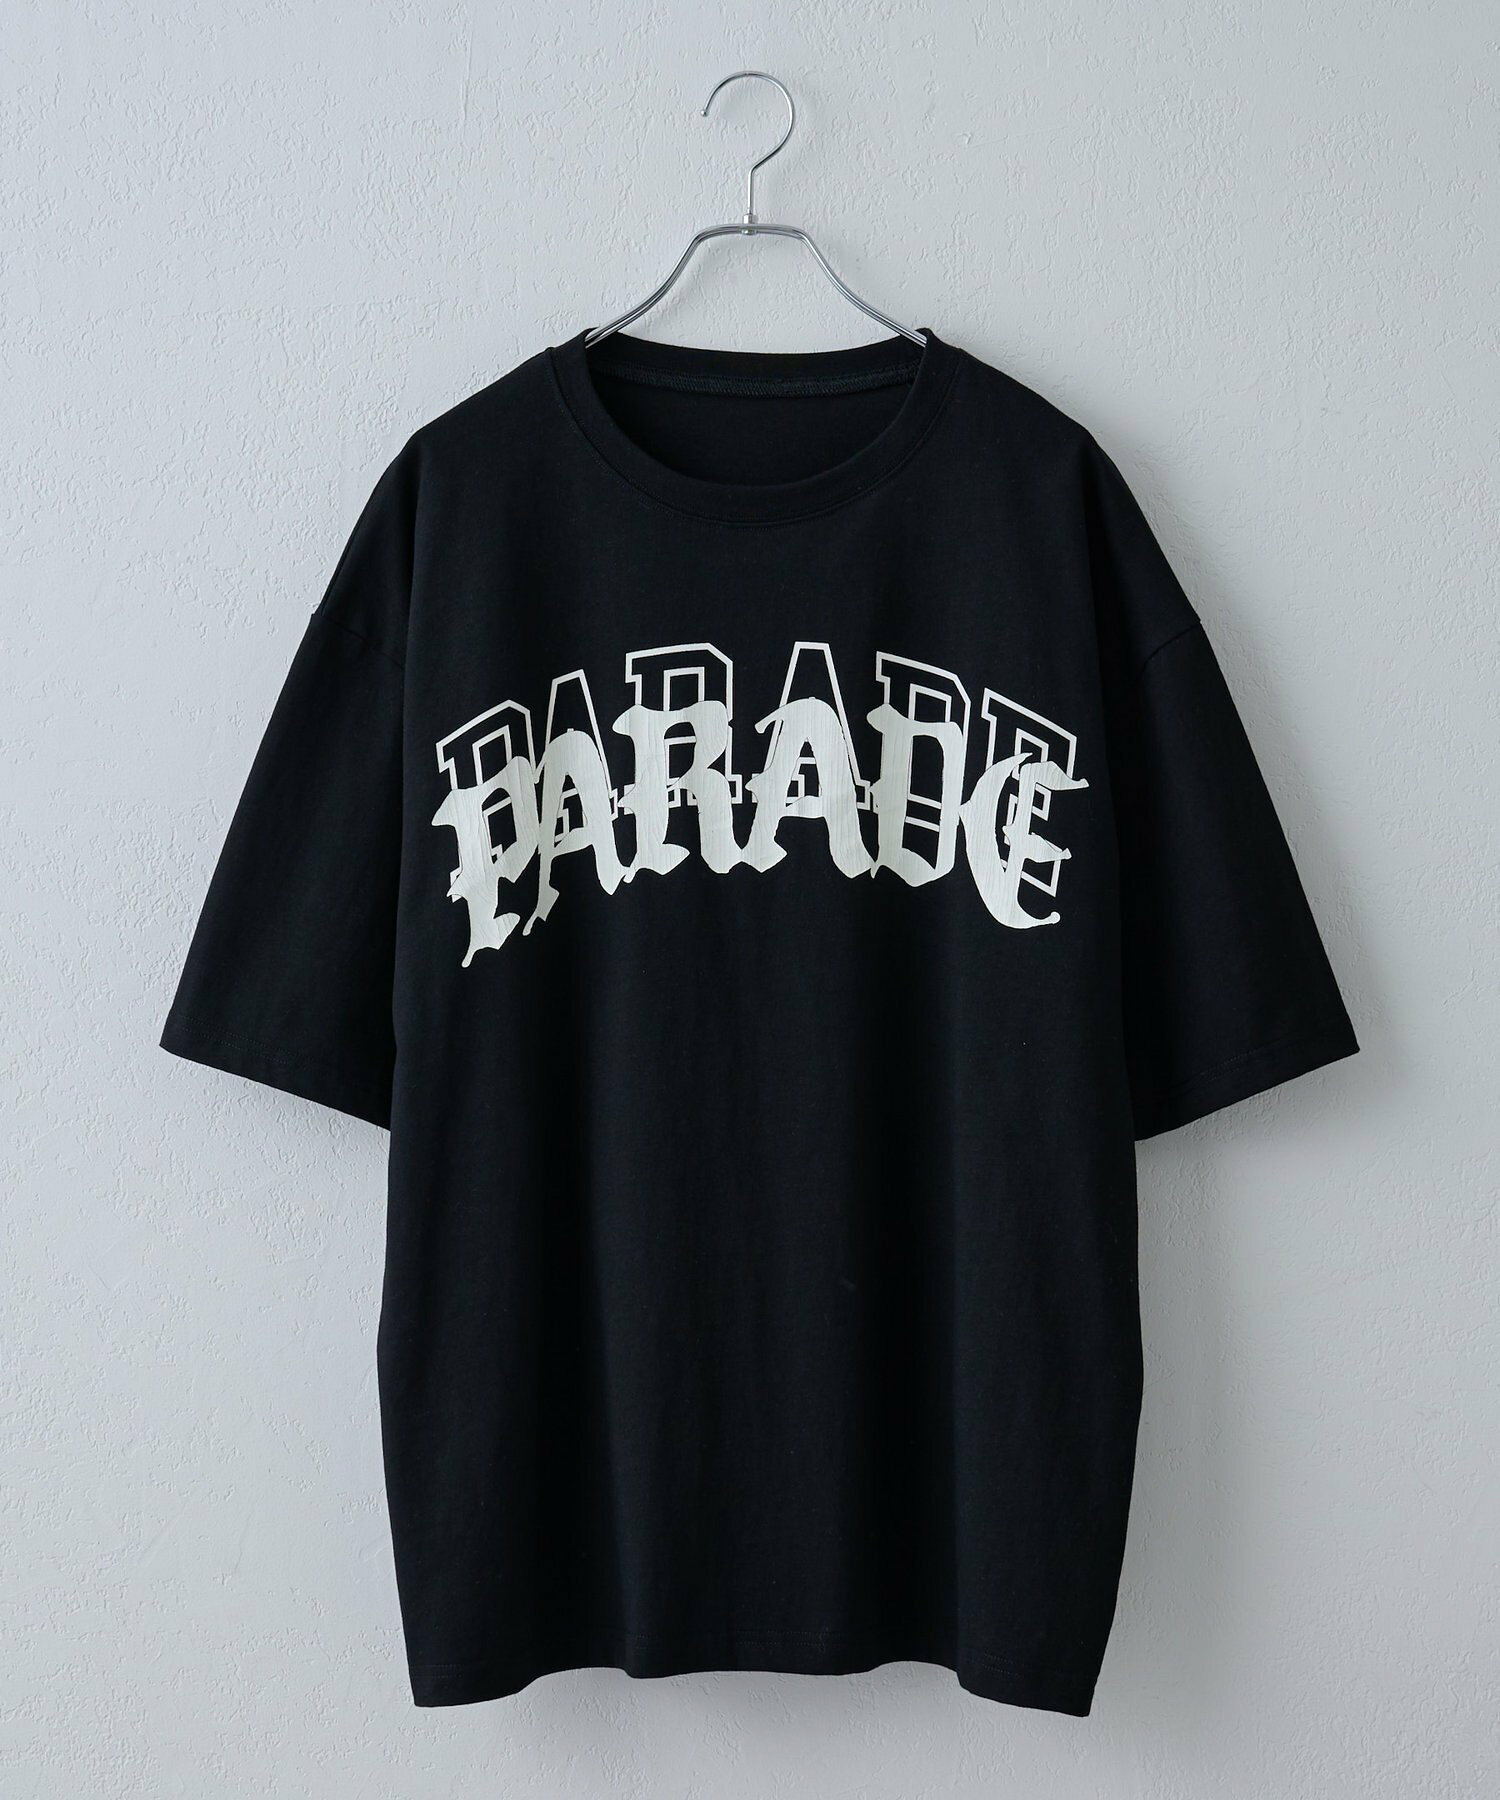 レイヤードプリントTシャツ(parade)